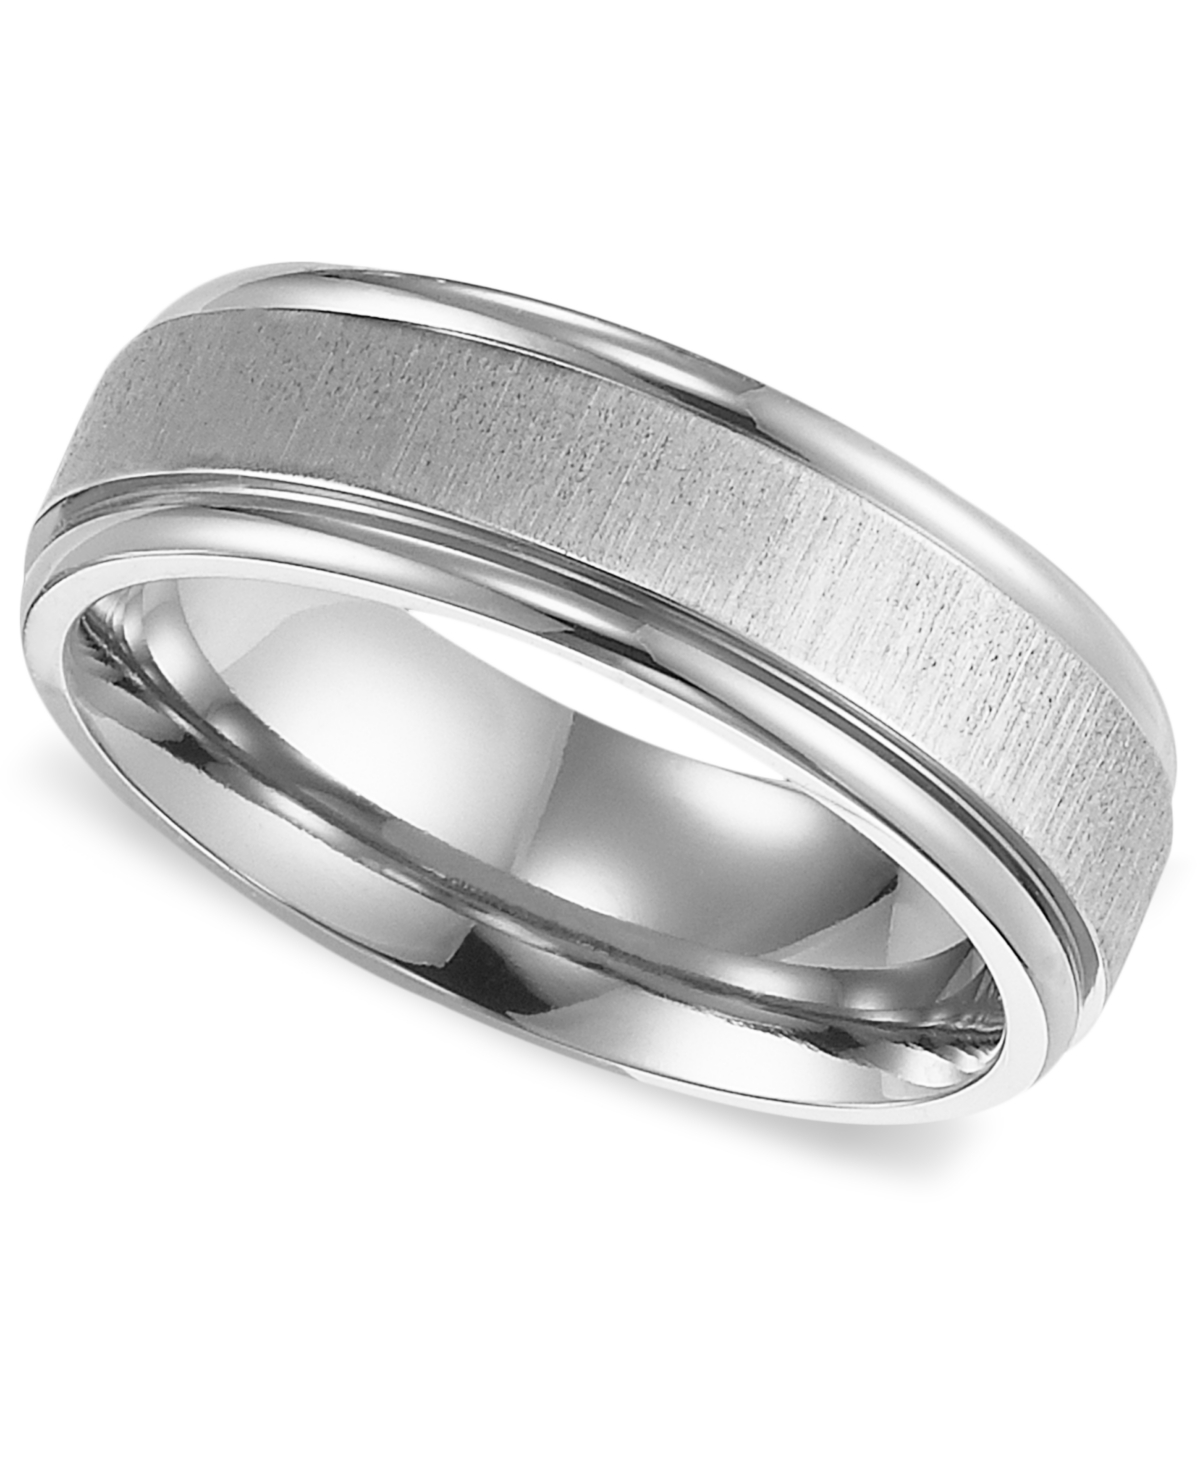 Men's Titanium Ring, Comfort Fit Wedding Band - Titanium